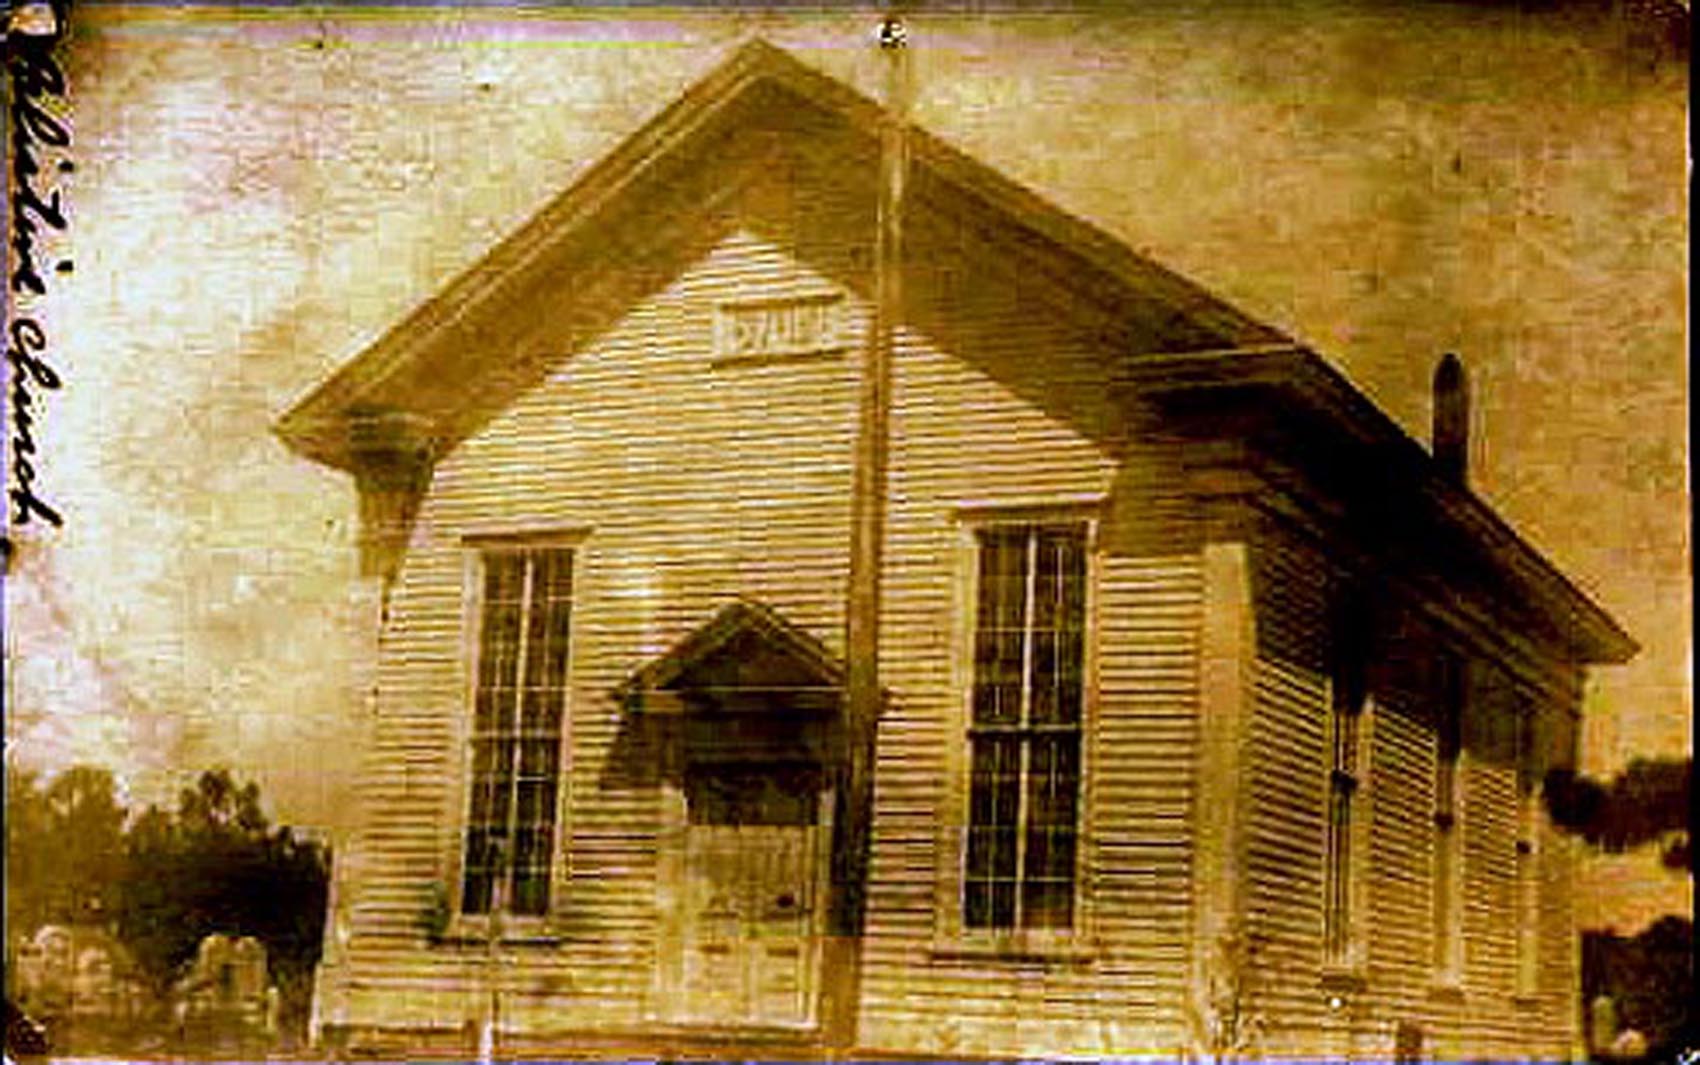 Scullvlle - Palestine Methodist Episcopal Church - Built1866 - 1907